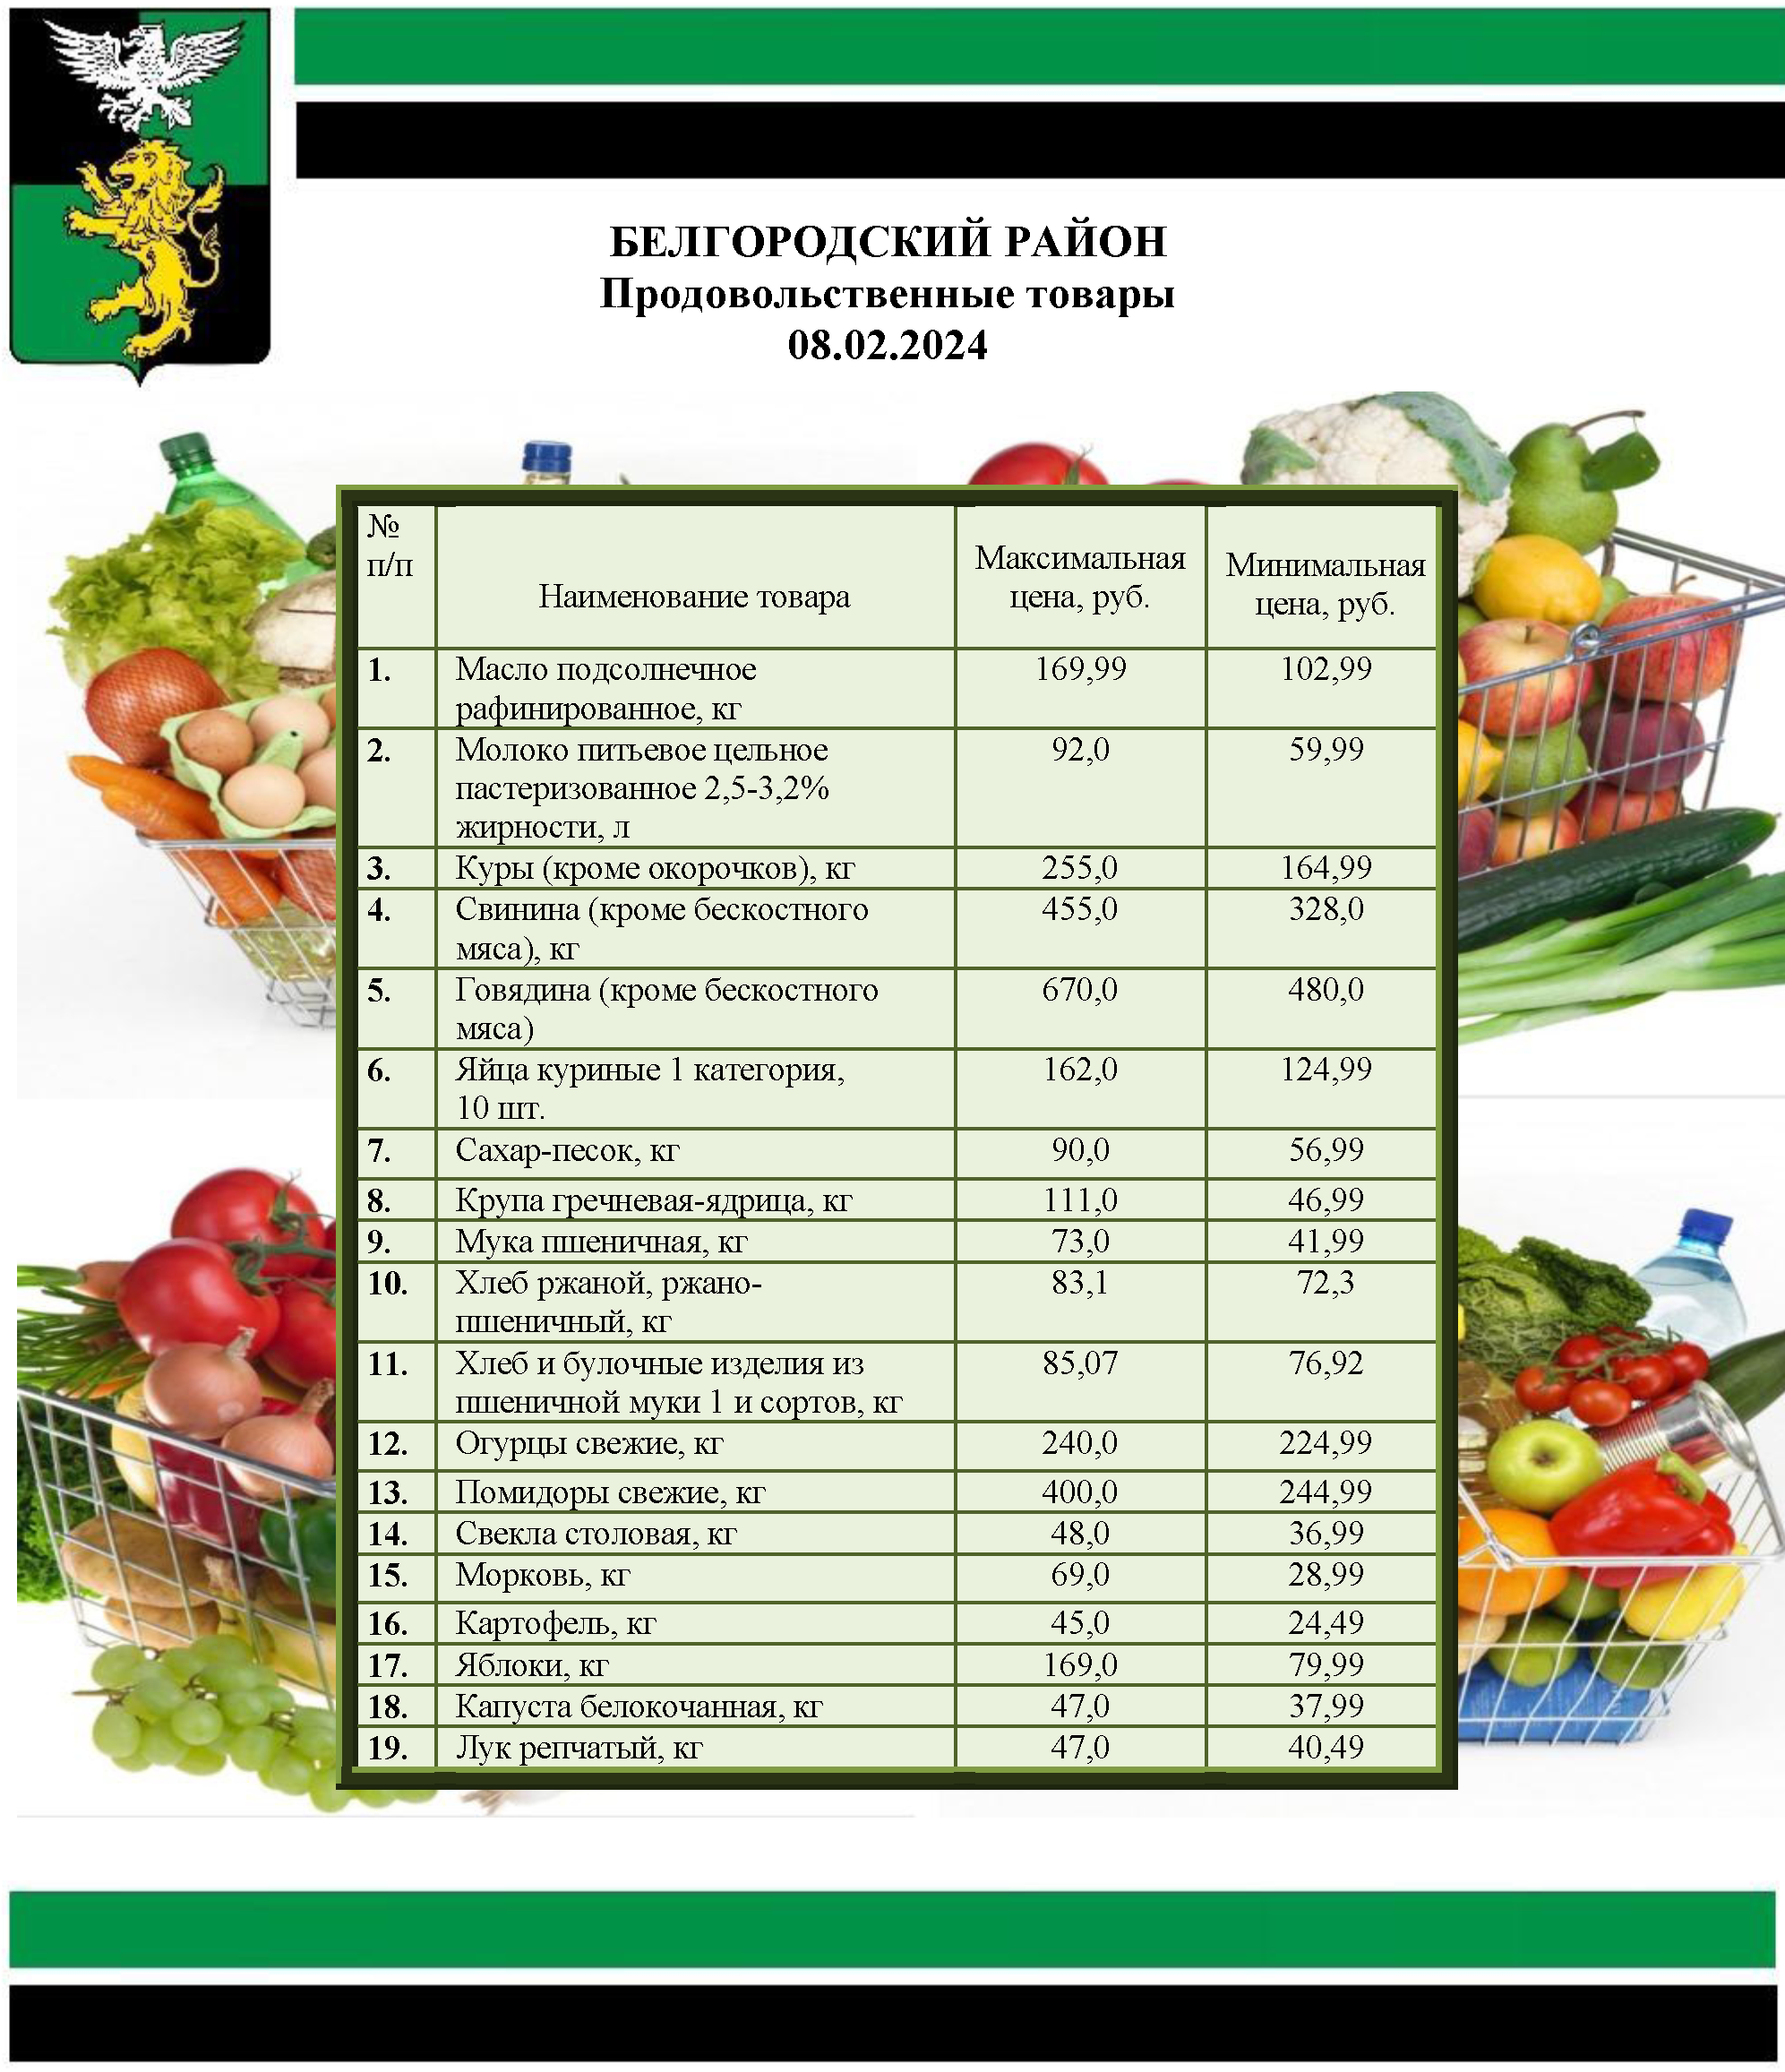 Информация о ценах на продовольственные товары, подлежащие мониторингу, на территории Белгородского района на 08.07.2024.